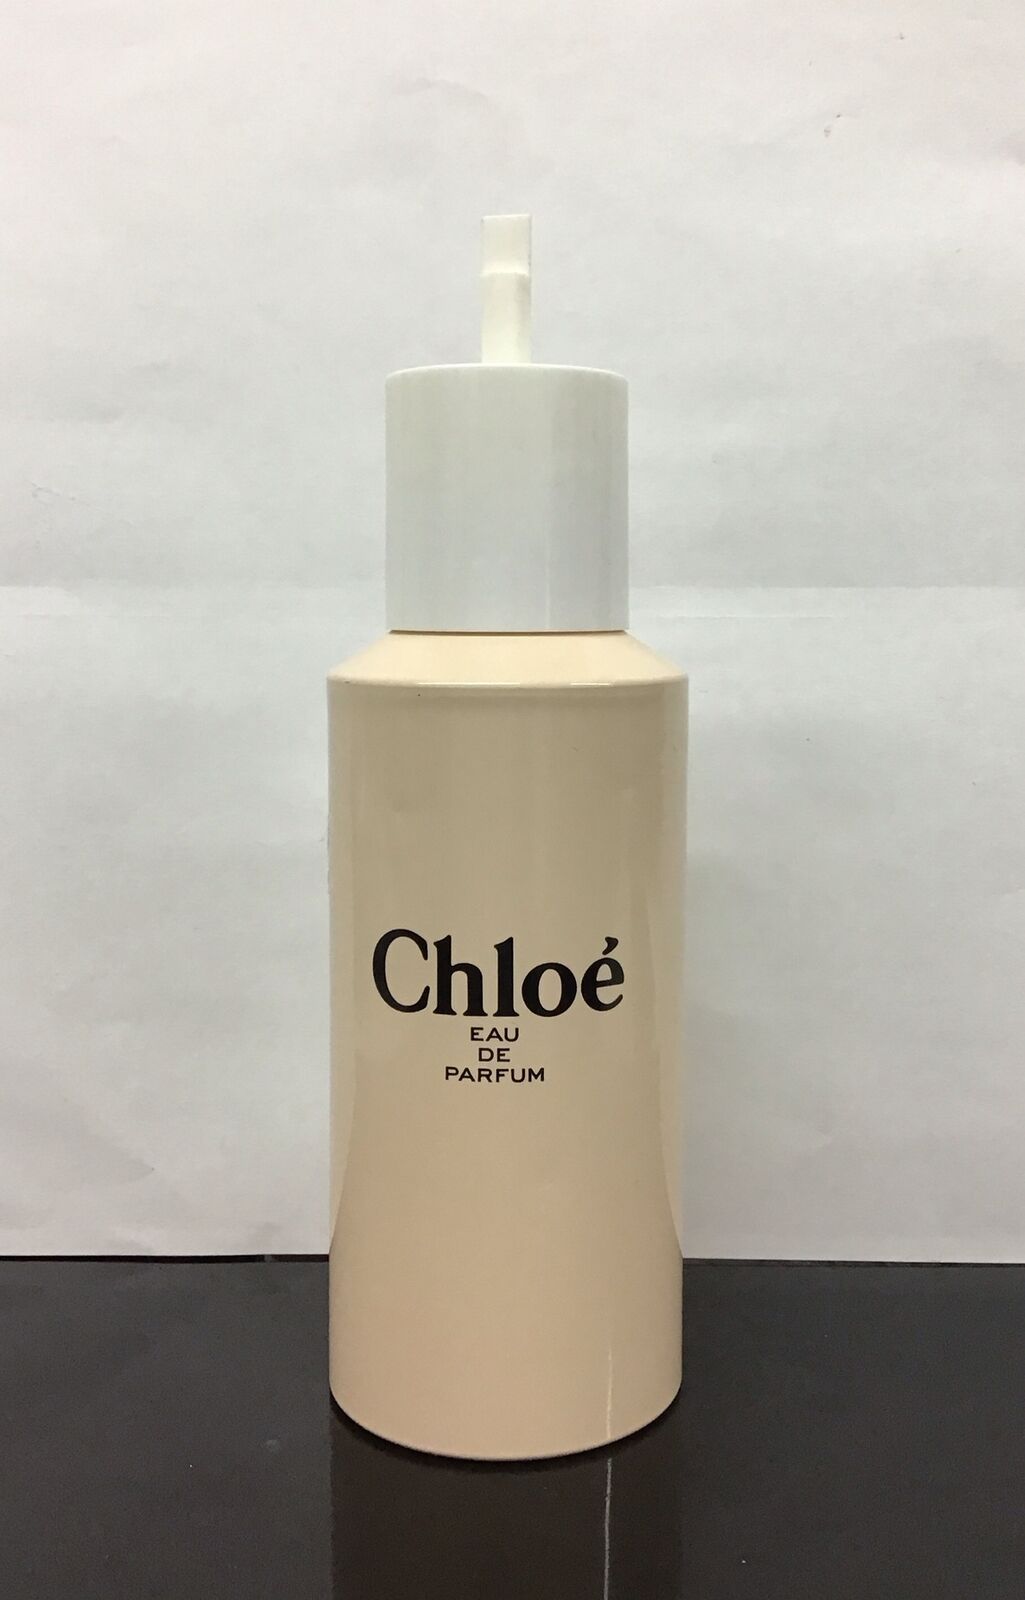 Chloe Eau De Parfum Refill 5.0 Fl Oz/ 150 Ml, As Pictured, No Box.  90% Full